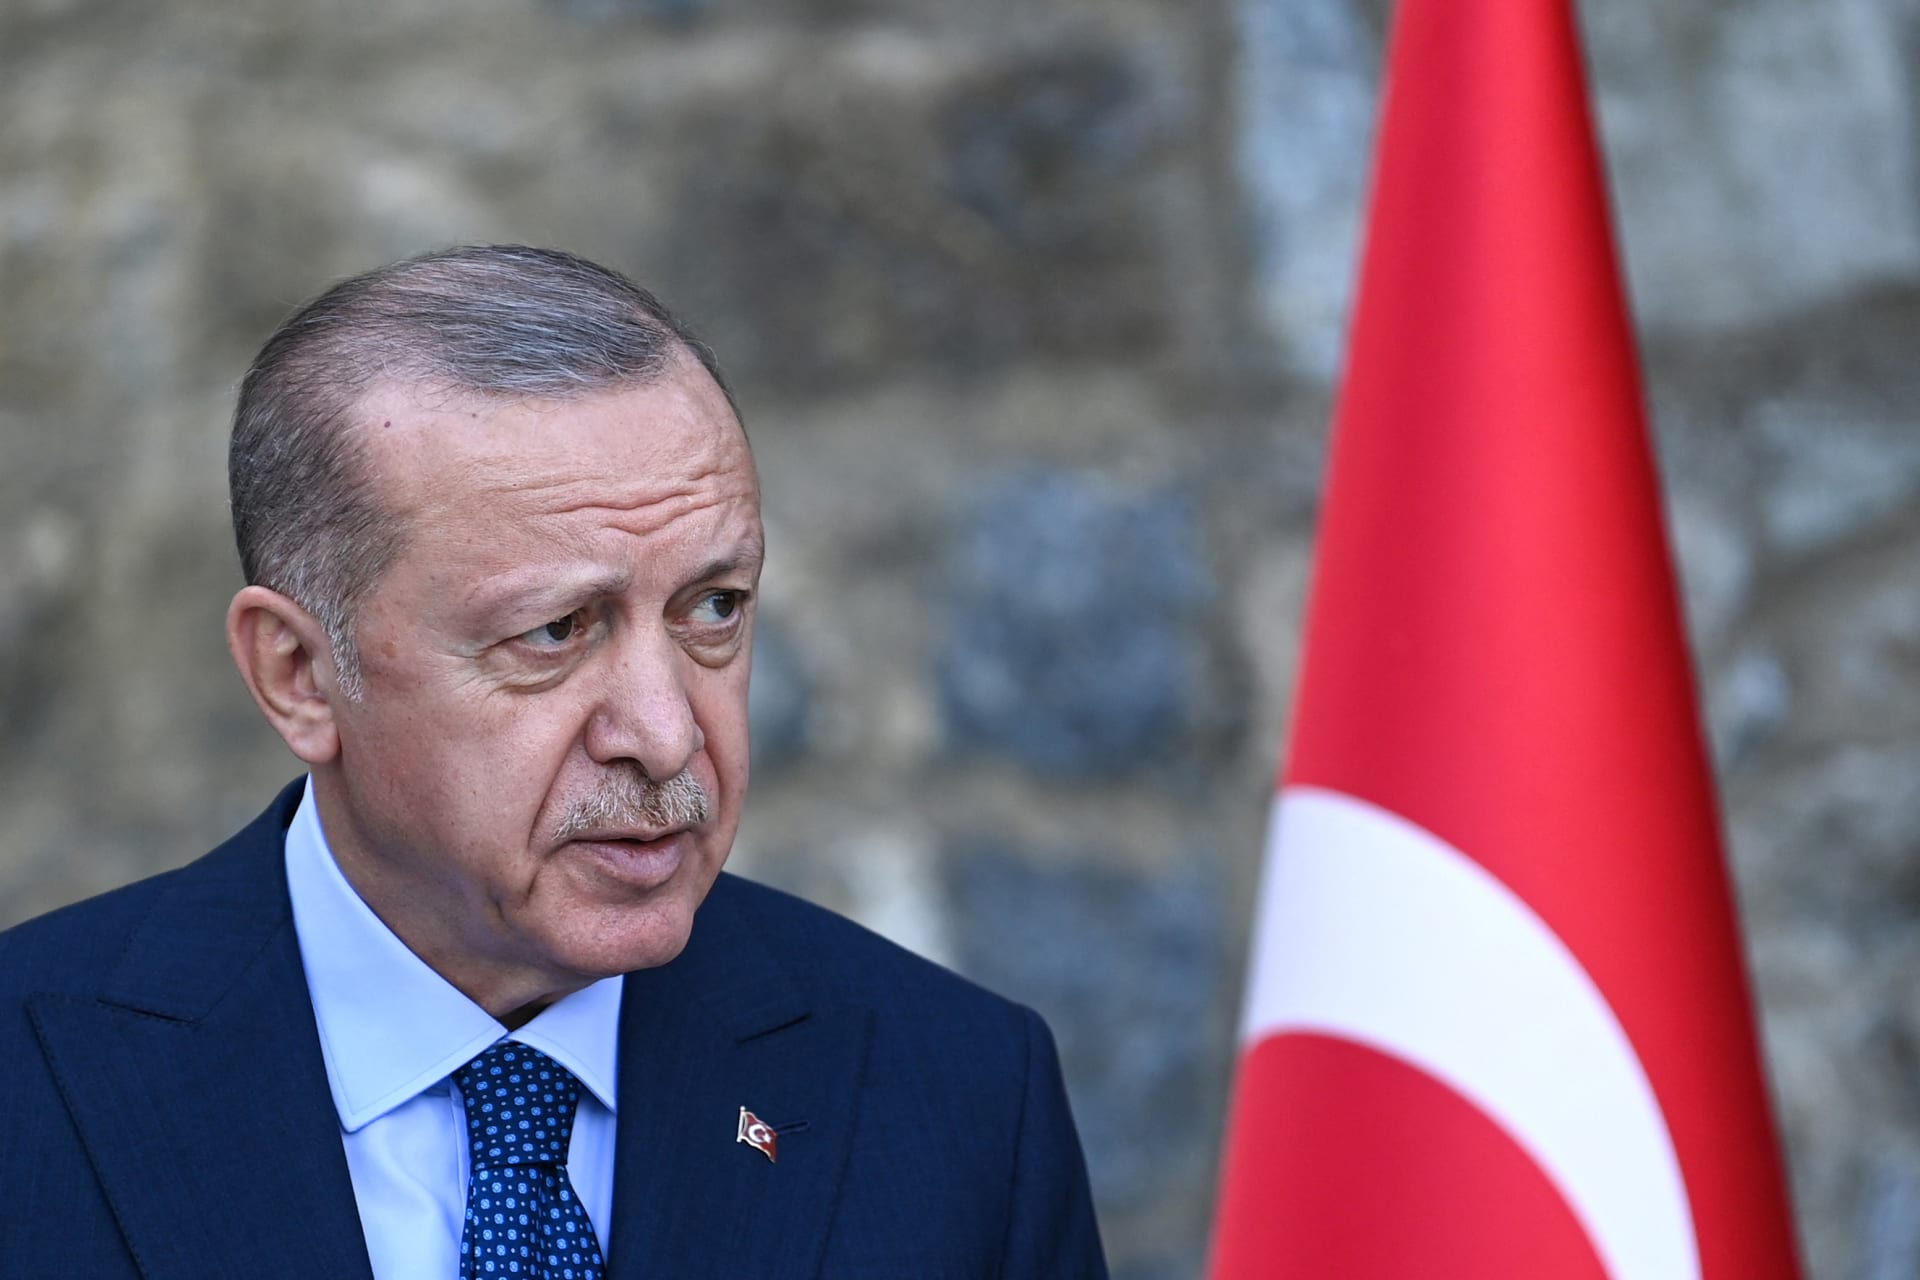 الرئيس التركي أردوغان يأمر باعتبار سفراء 10 دول "أشخاصًا غير مرغوب فيهم"